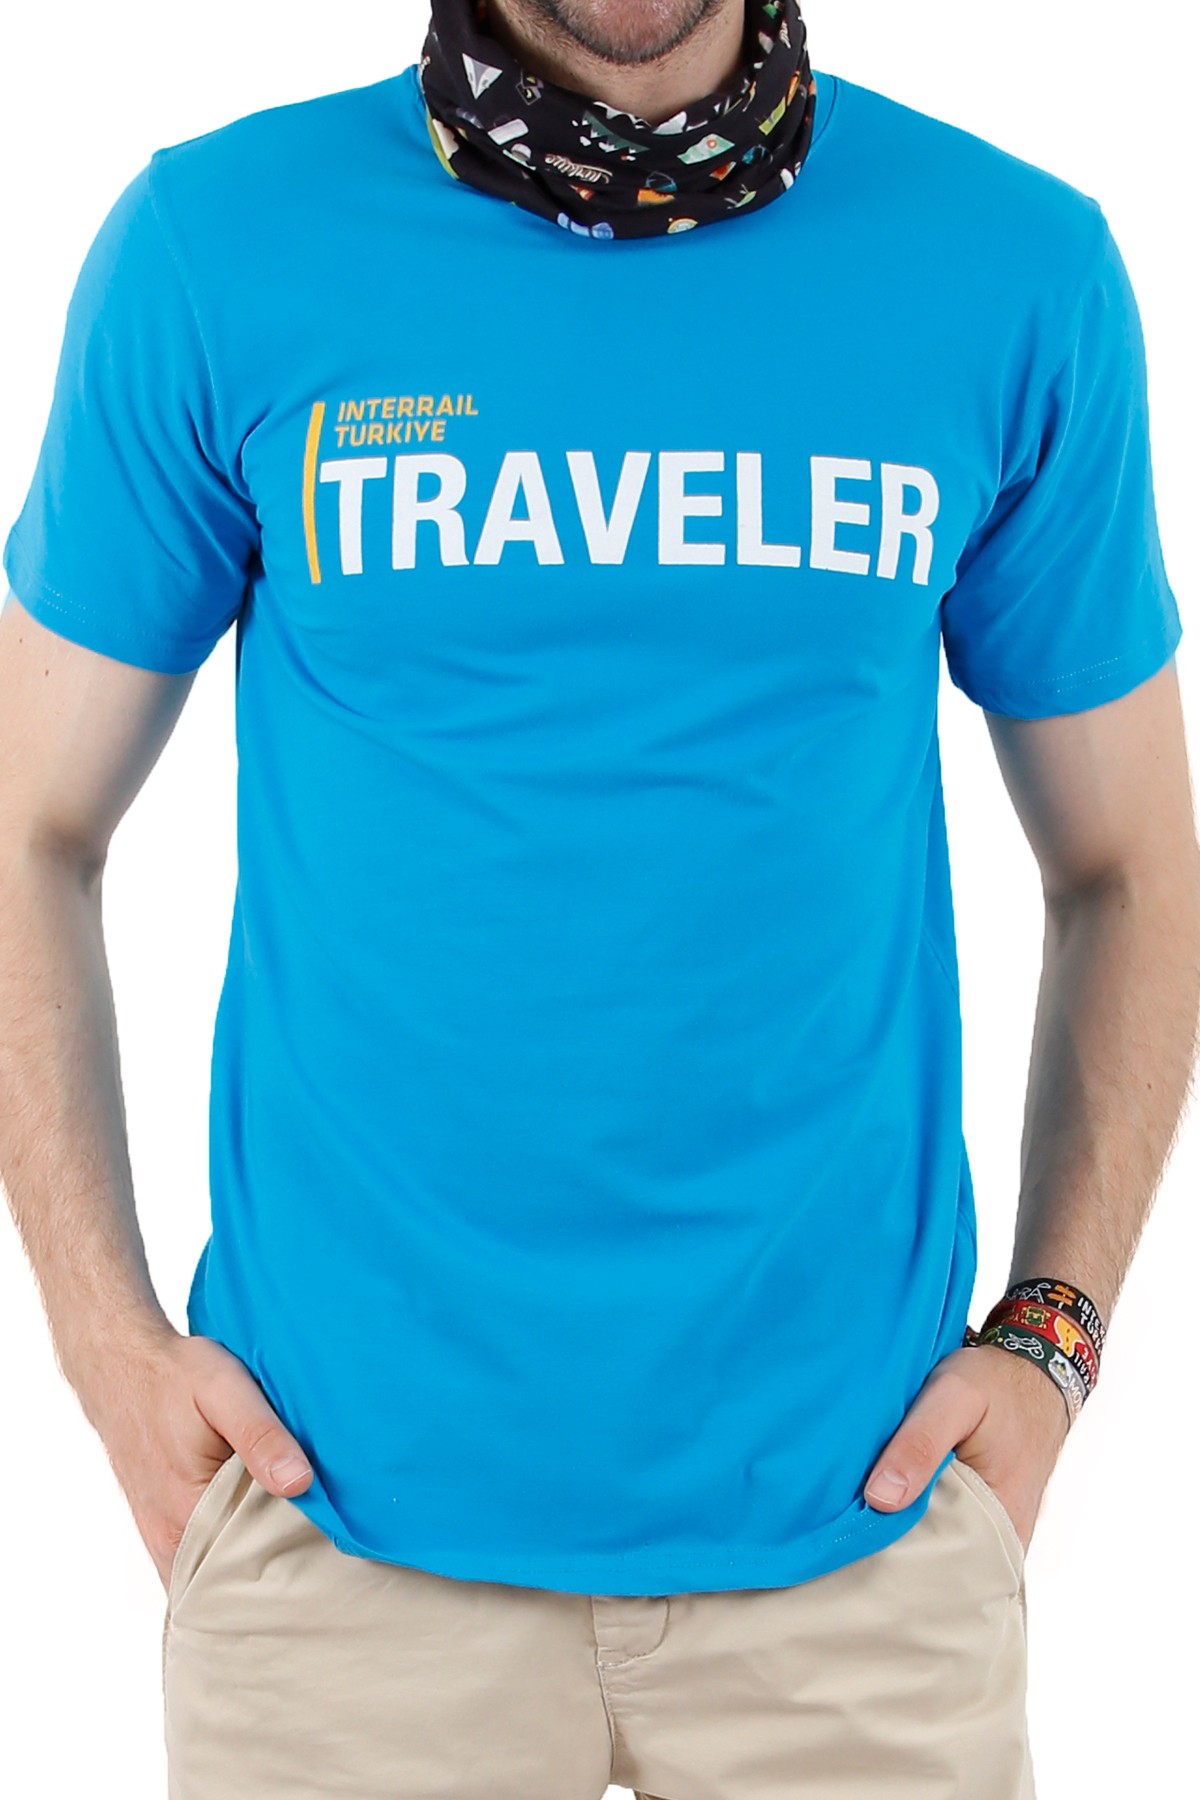 Interrail Türkiye "TRAVELER" Özel Tasarım T-shirt  / Mavi